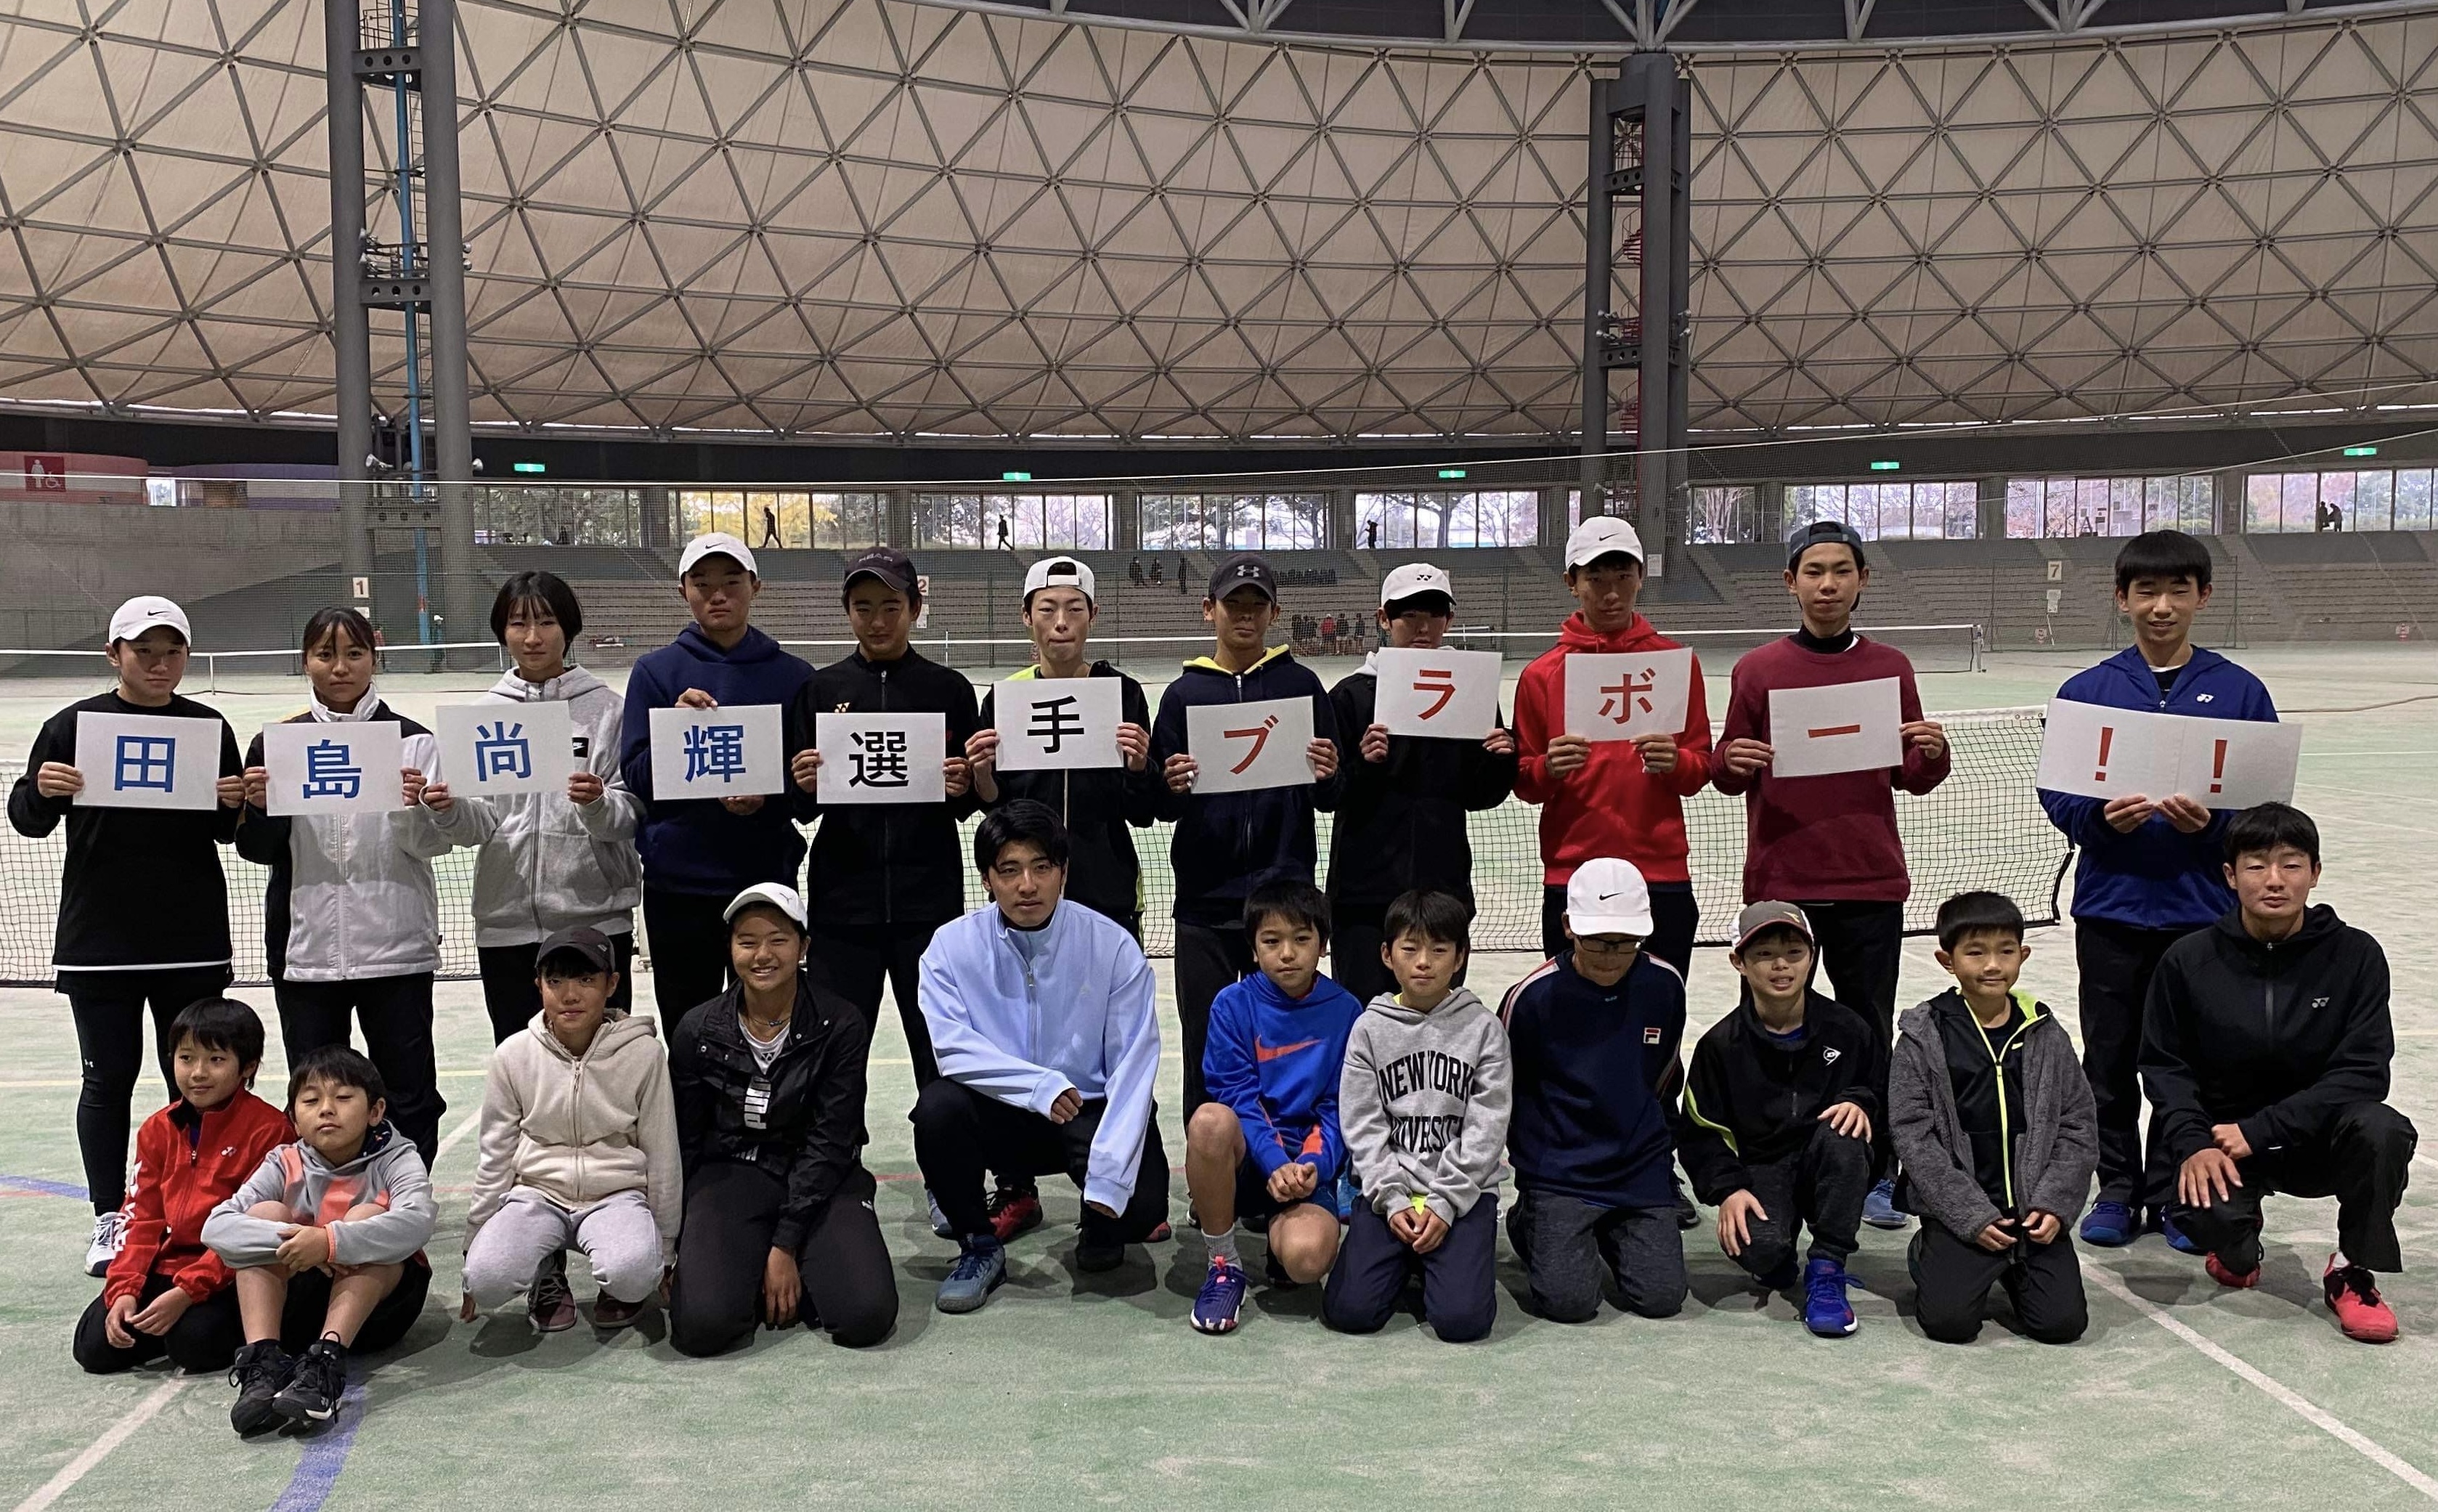 熊本で二日間のテニスイベント